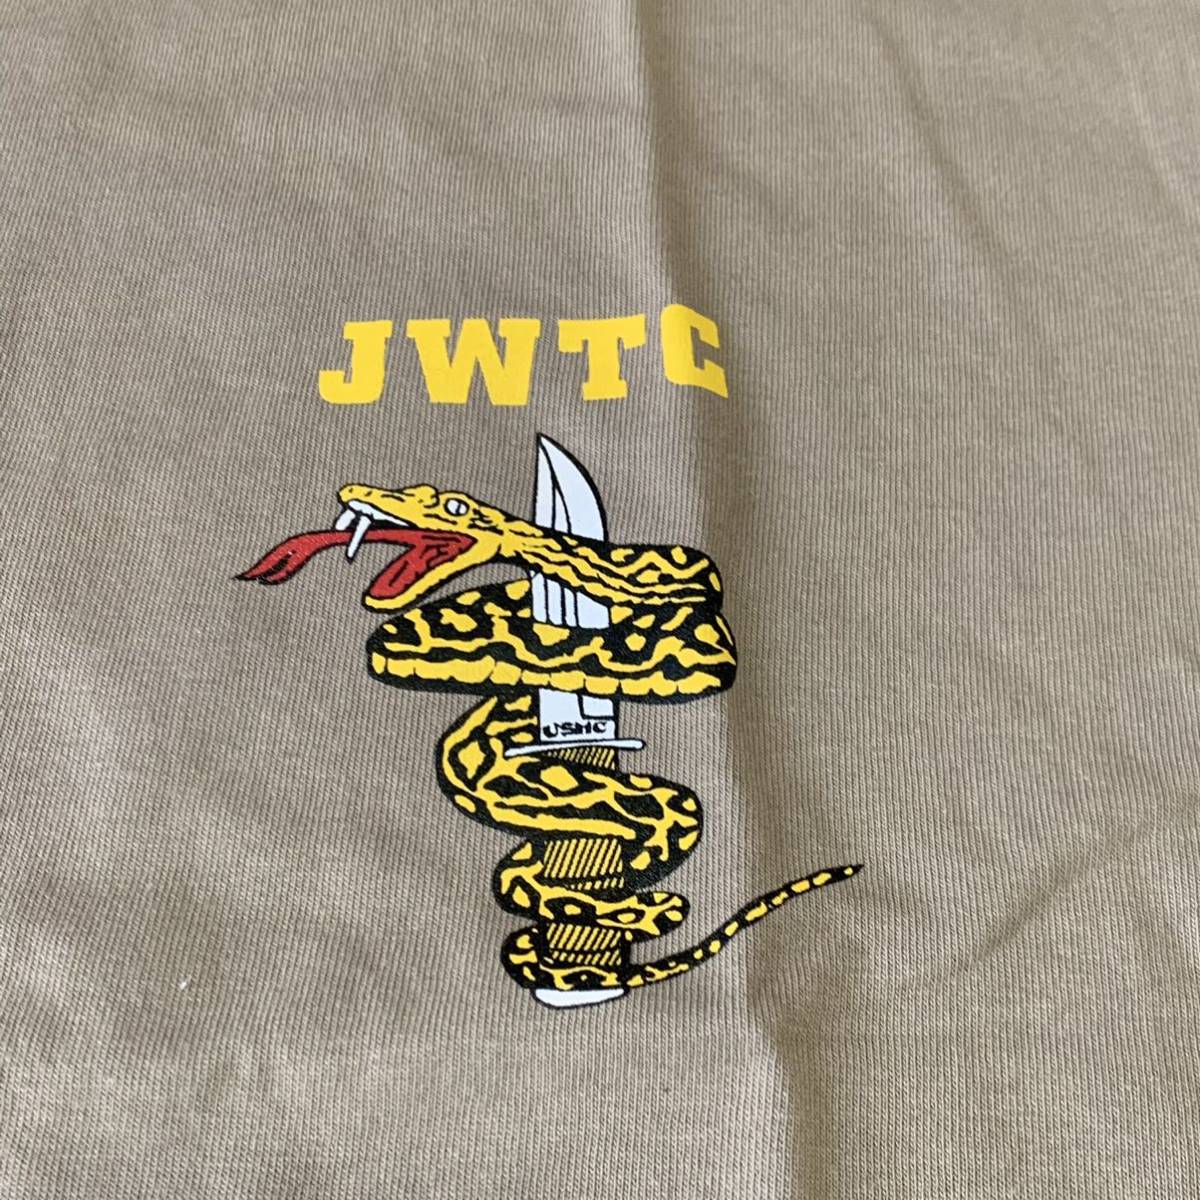  Okinawa вооруженные силы США сброшенный товар море .. оригинал JWTC Jean gru War fea футболка тренировка центральный TAN ( контрольный номер F37)